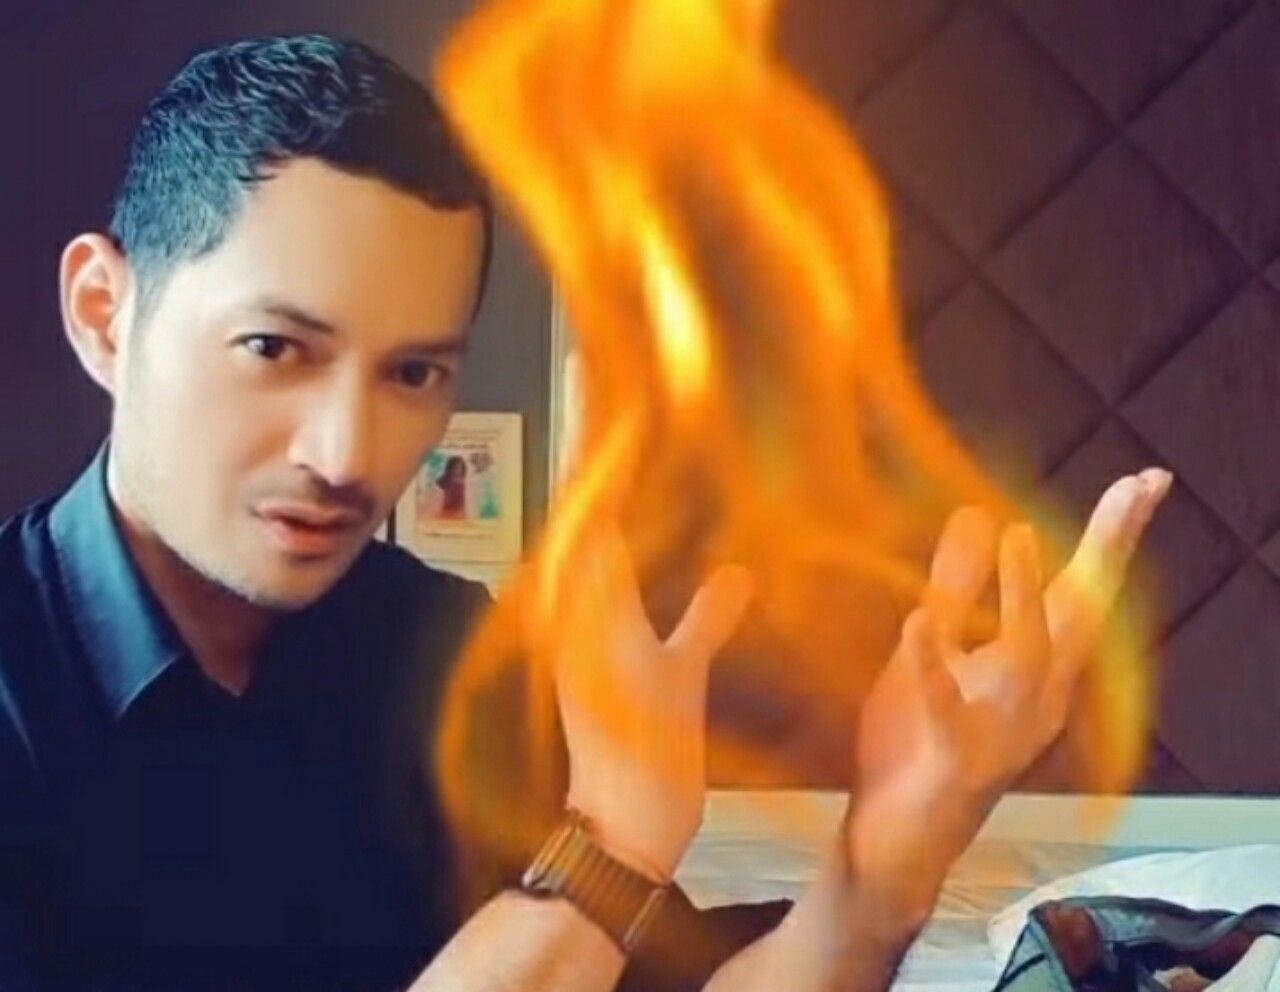 Video Evan Sanders saat bermain api menggunakan efek yang di posting di Instagram miliknya